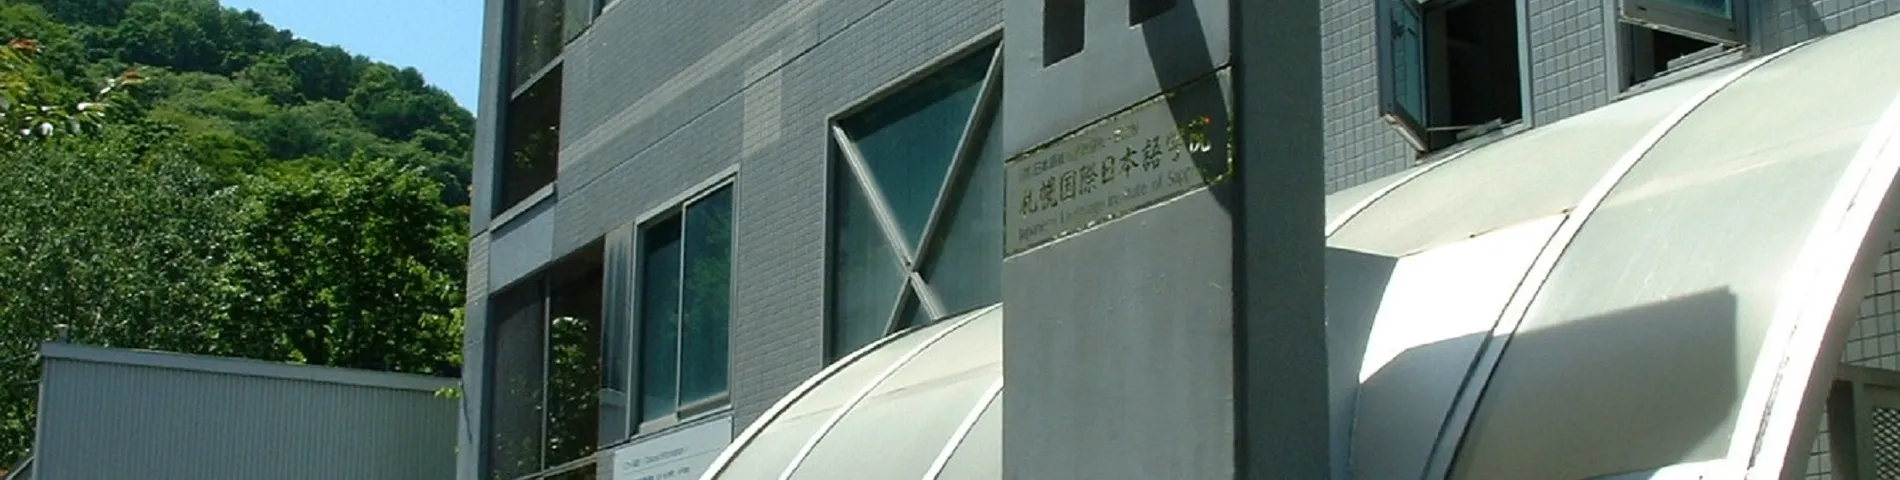 Japanese Language Institute of Sapporo รูปภาพ 1